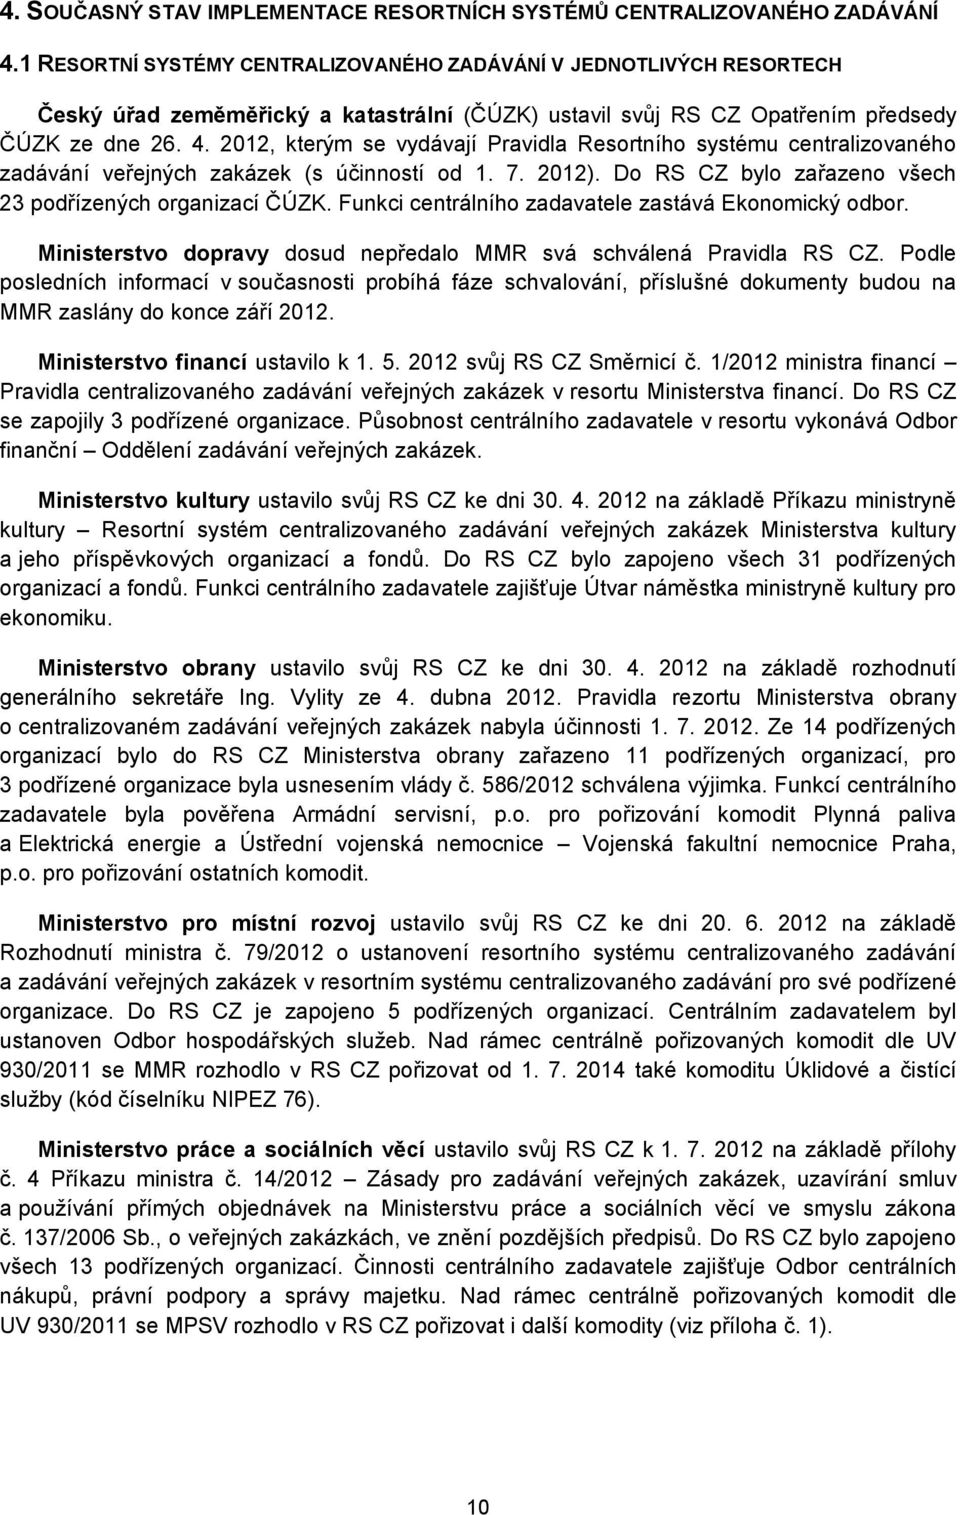 2012, kterým se vydávají Pravidla Resortního systému centralizovaného zadávání veřejných zakázek (s účinností od 1. 7. 2012). Do RS CZ bylo zařazeno všech 23 podřízených organizací ČÚZK.